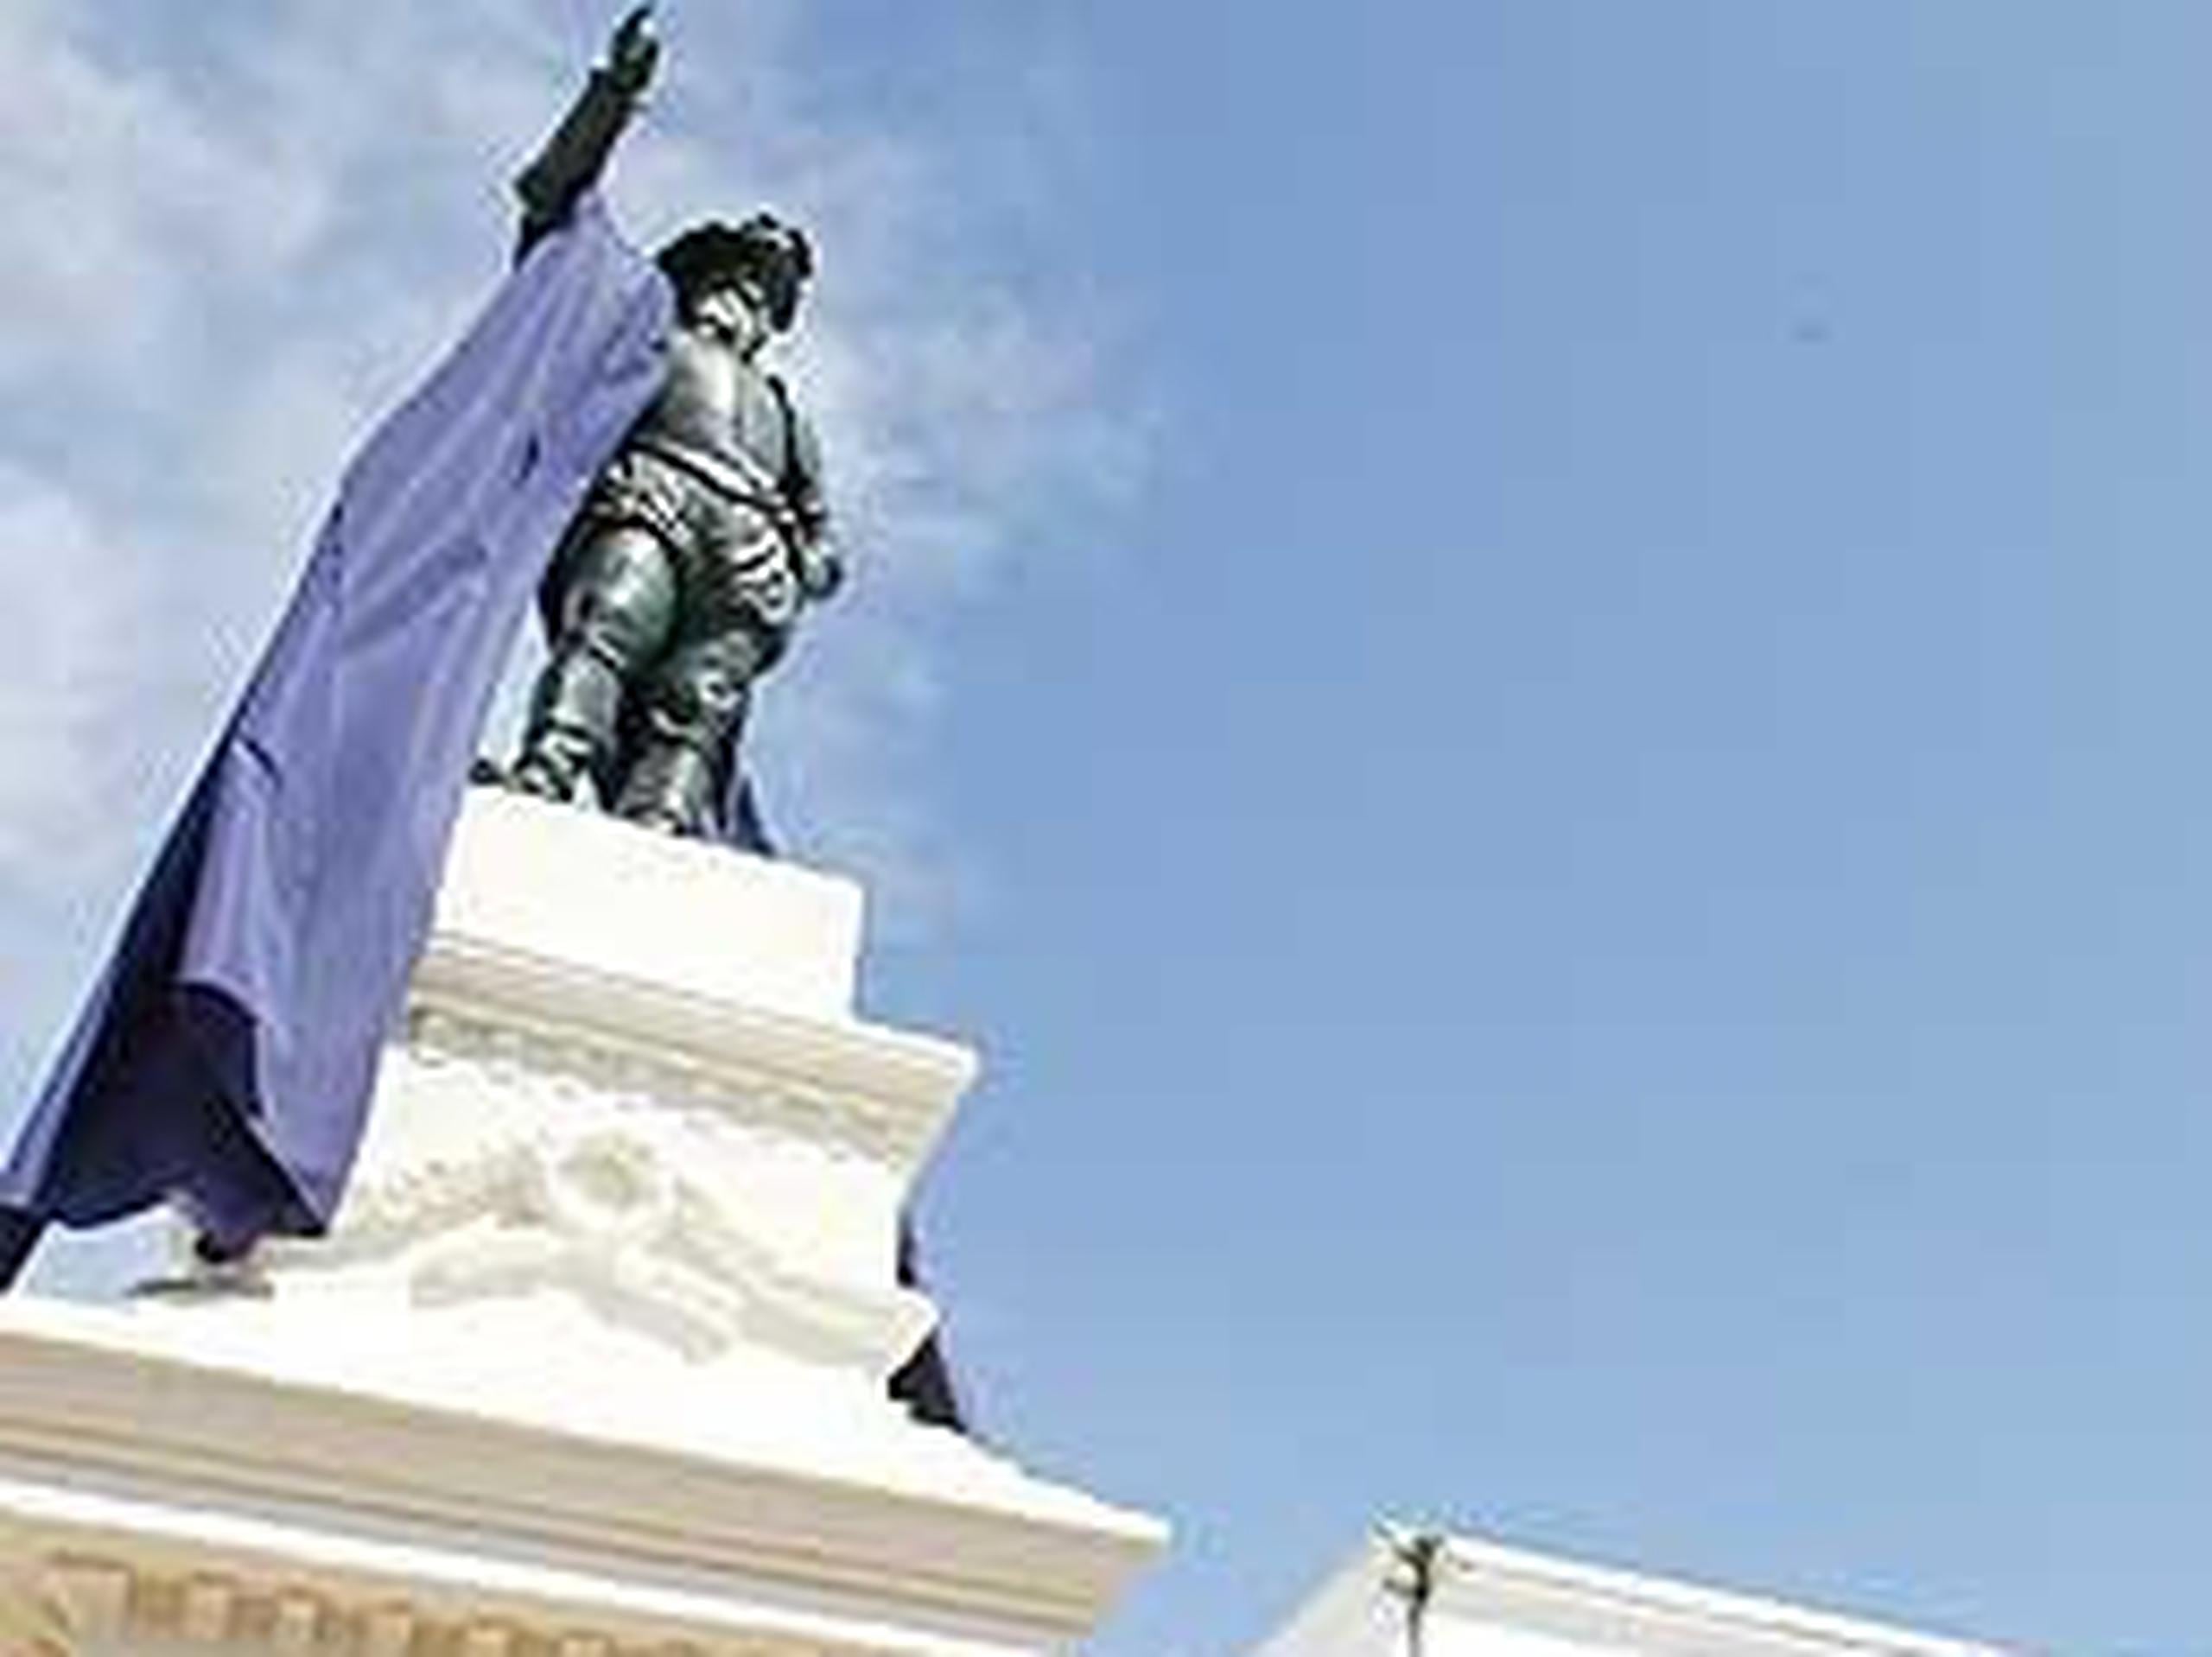 Como parte de las actividades el gobernador Luis Fortuño y el alcalde de San Juan, Jorge Santini, develan la estatua de Juan Ponce de León en la Plaza San José en el Viejo San Juan. (Primera Hora / Gerald Lopez-Cepero)